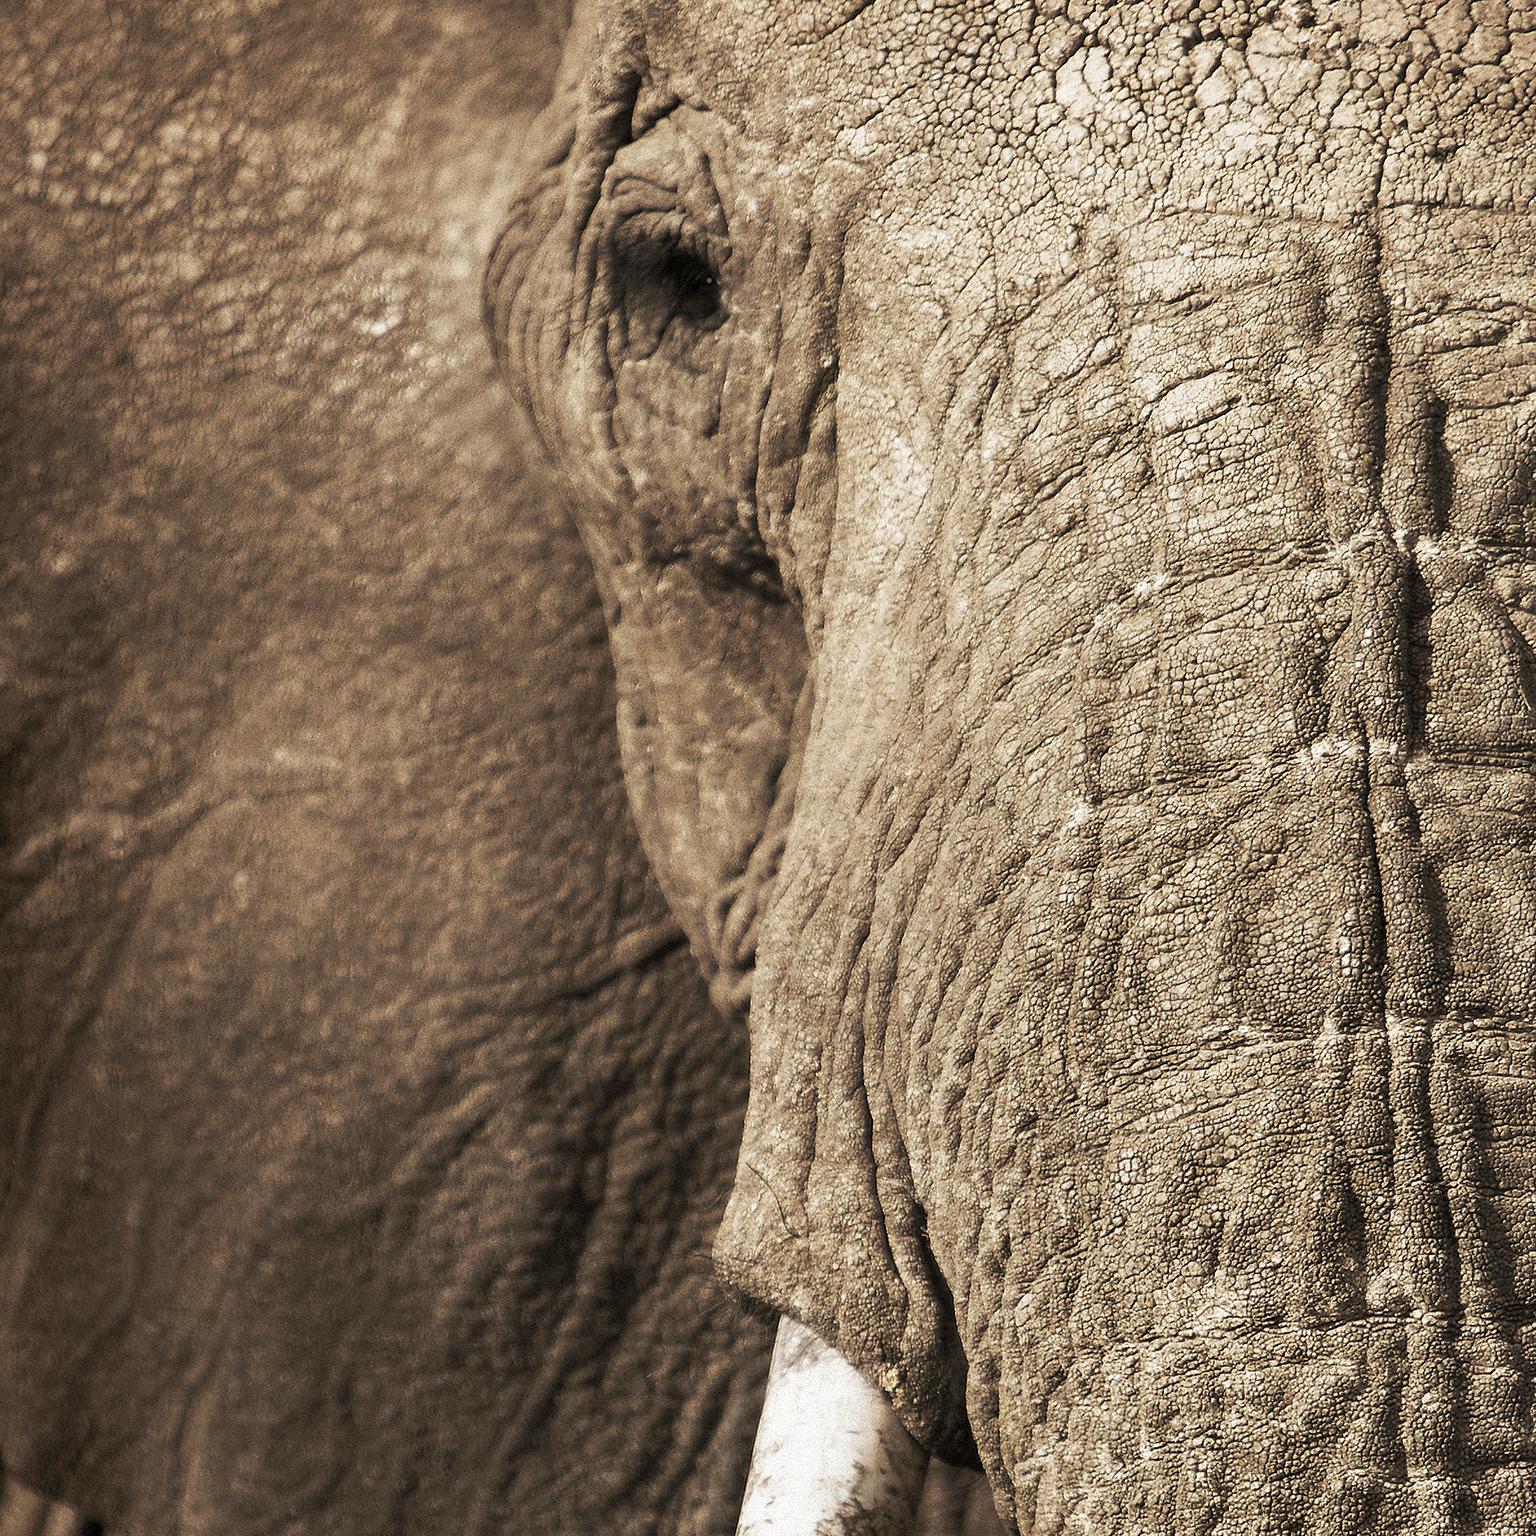 Elephant-04, Namibia. – Photograph von Chris Gordaneer